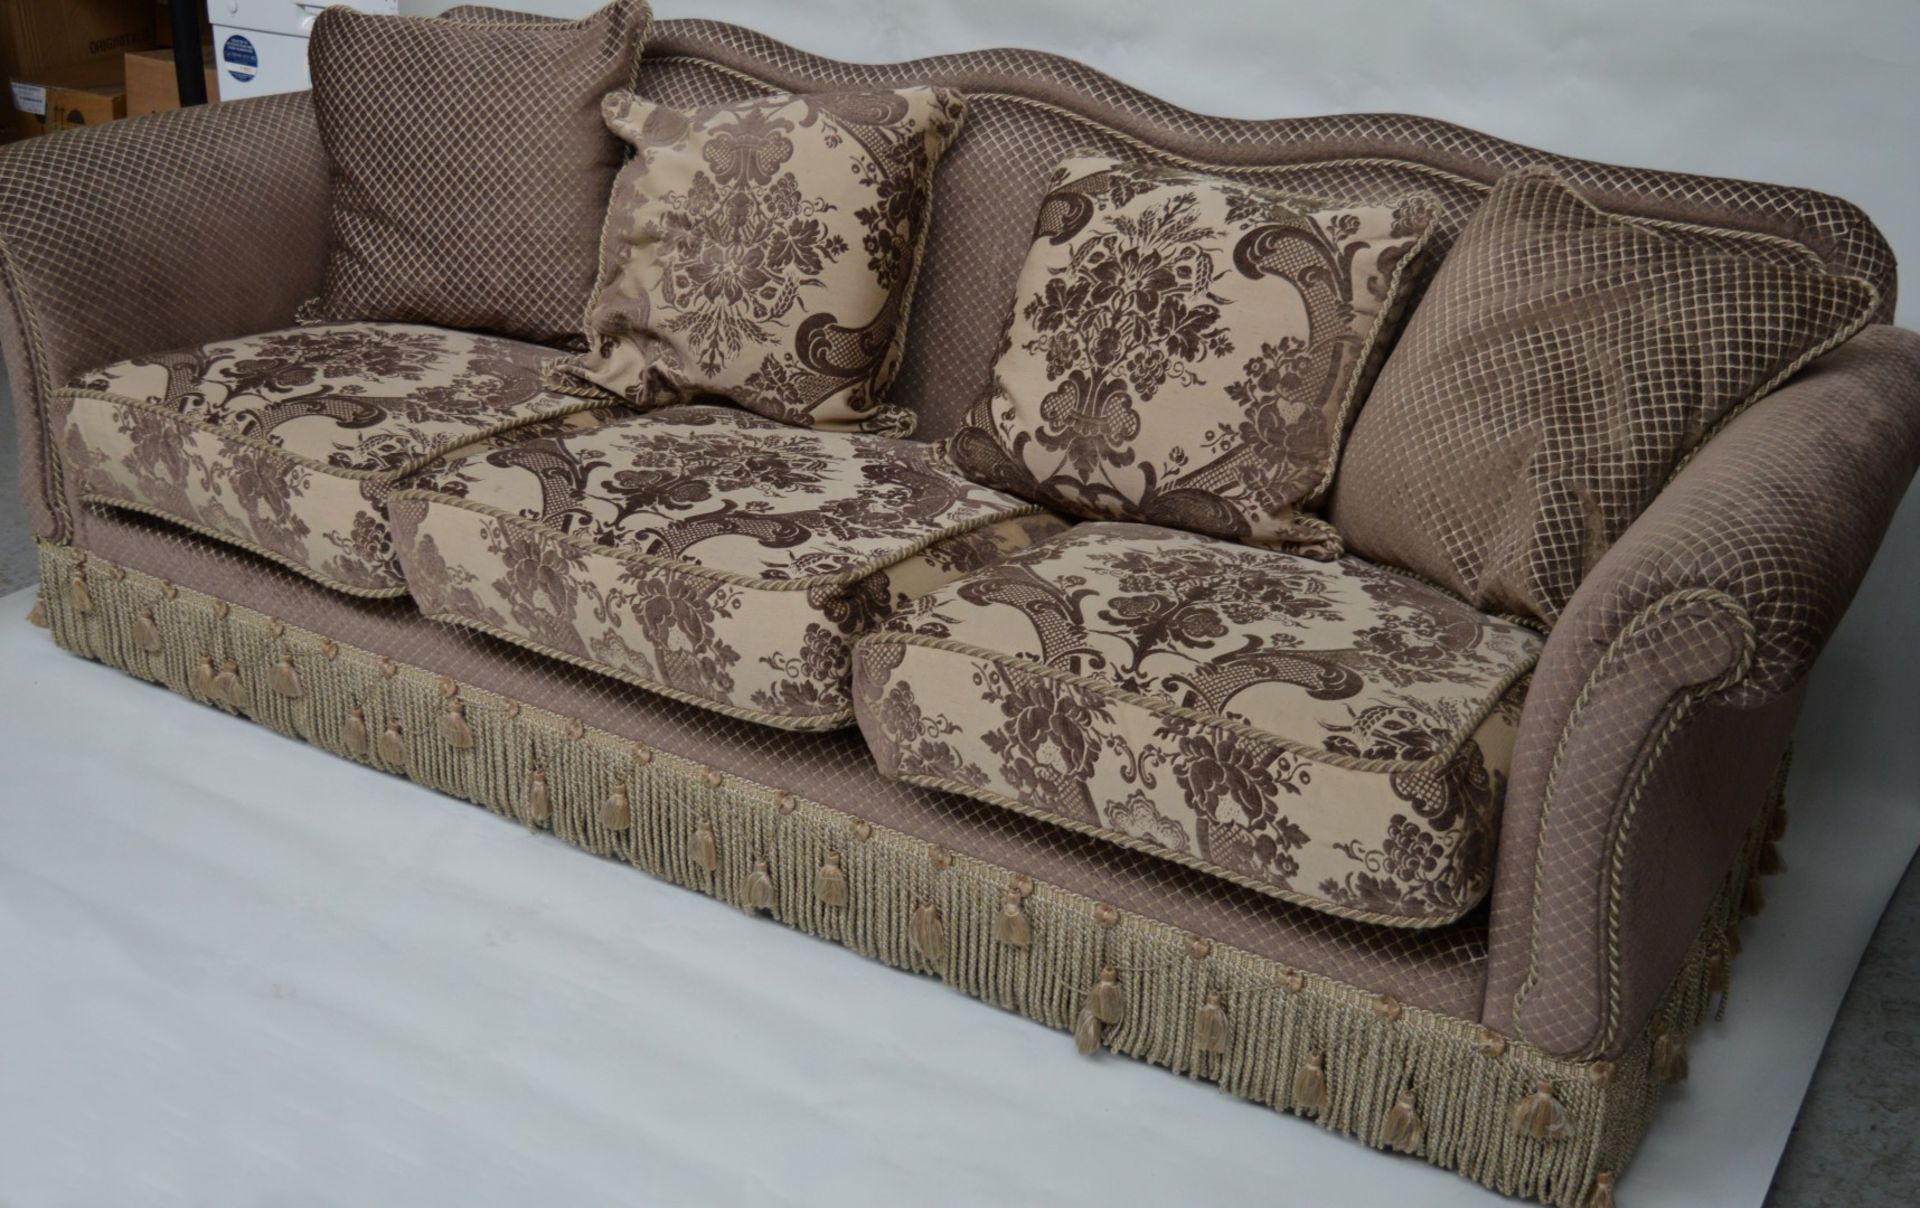 1 x Parker & Farr Abigail Special Sofa - Dimensions W240 x H87 x D89cm - Ref: 4081161 - CL007 - - Image 19 of 20